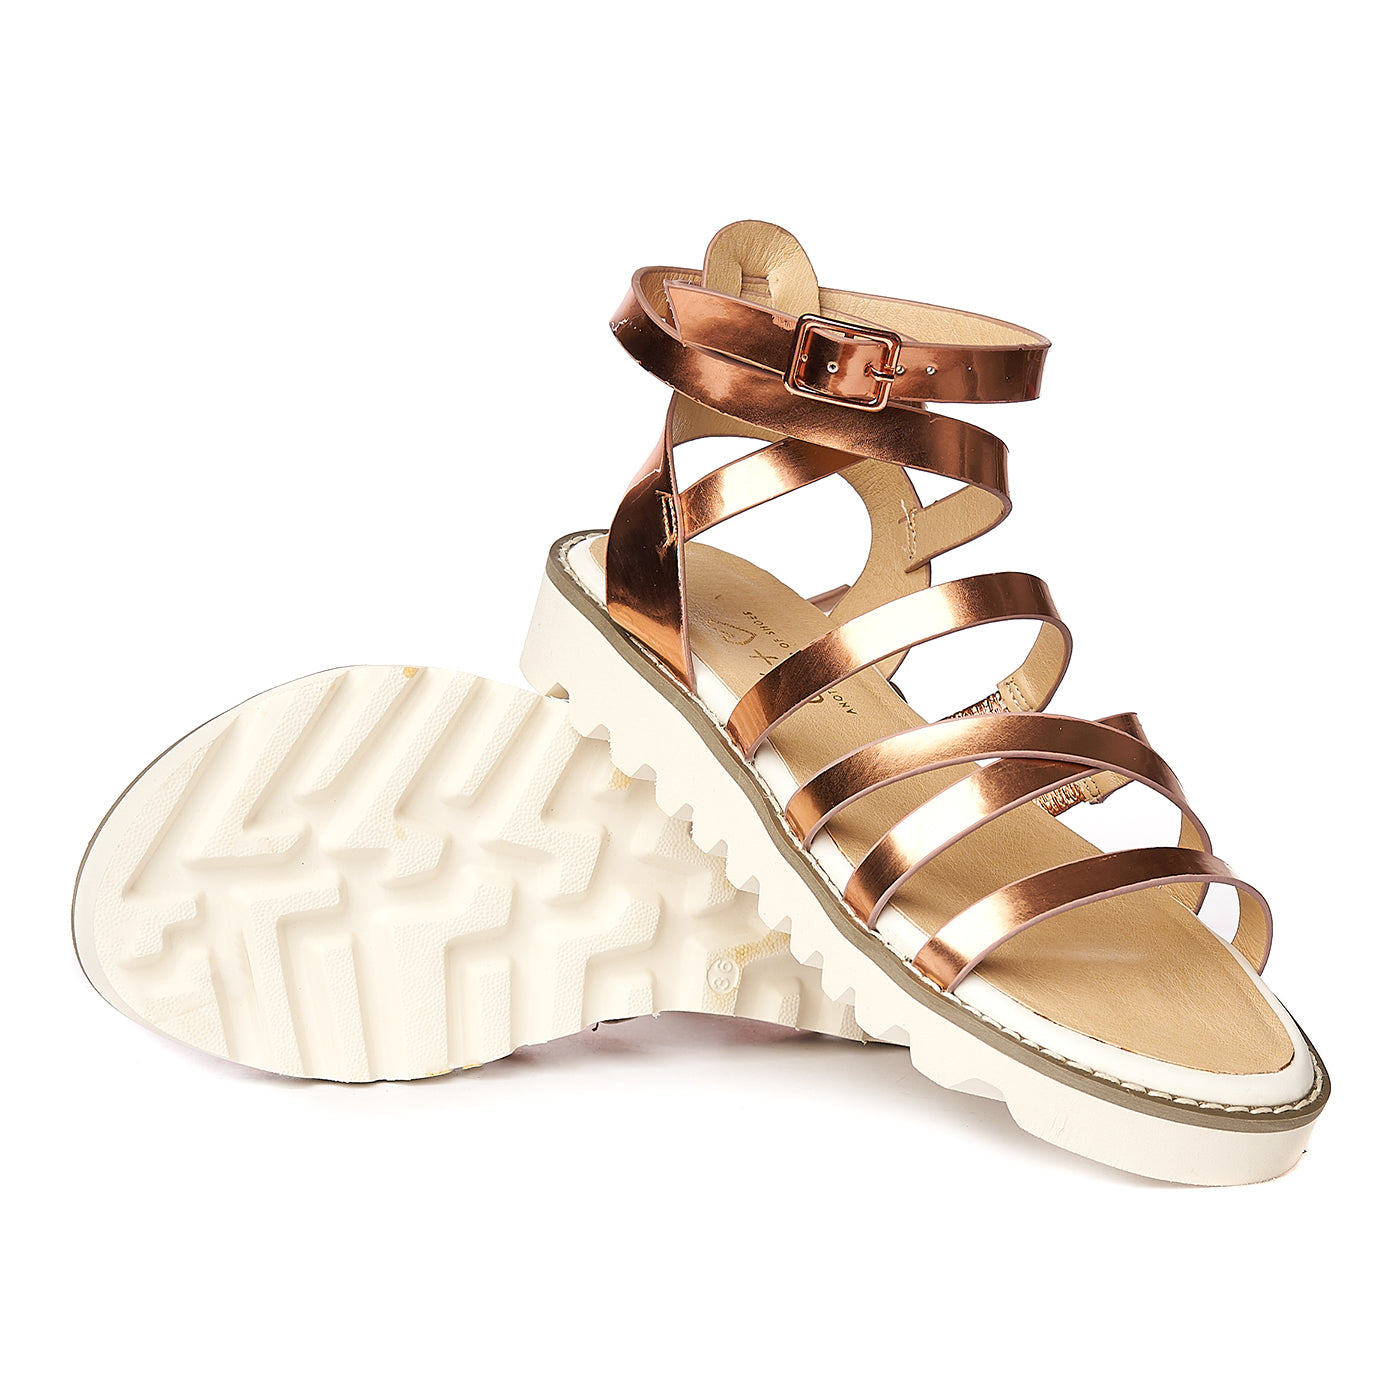 Sandale bronz/auriu ZLN 0229 - Zellini